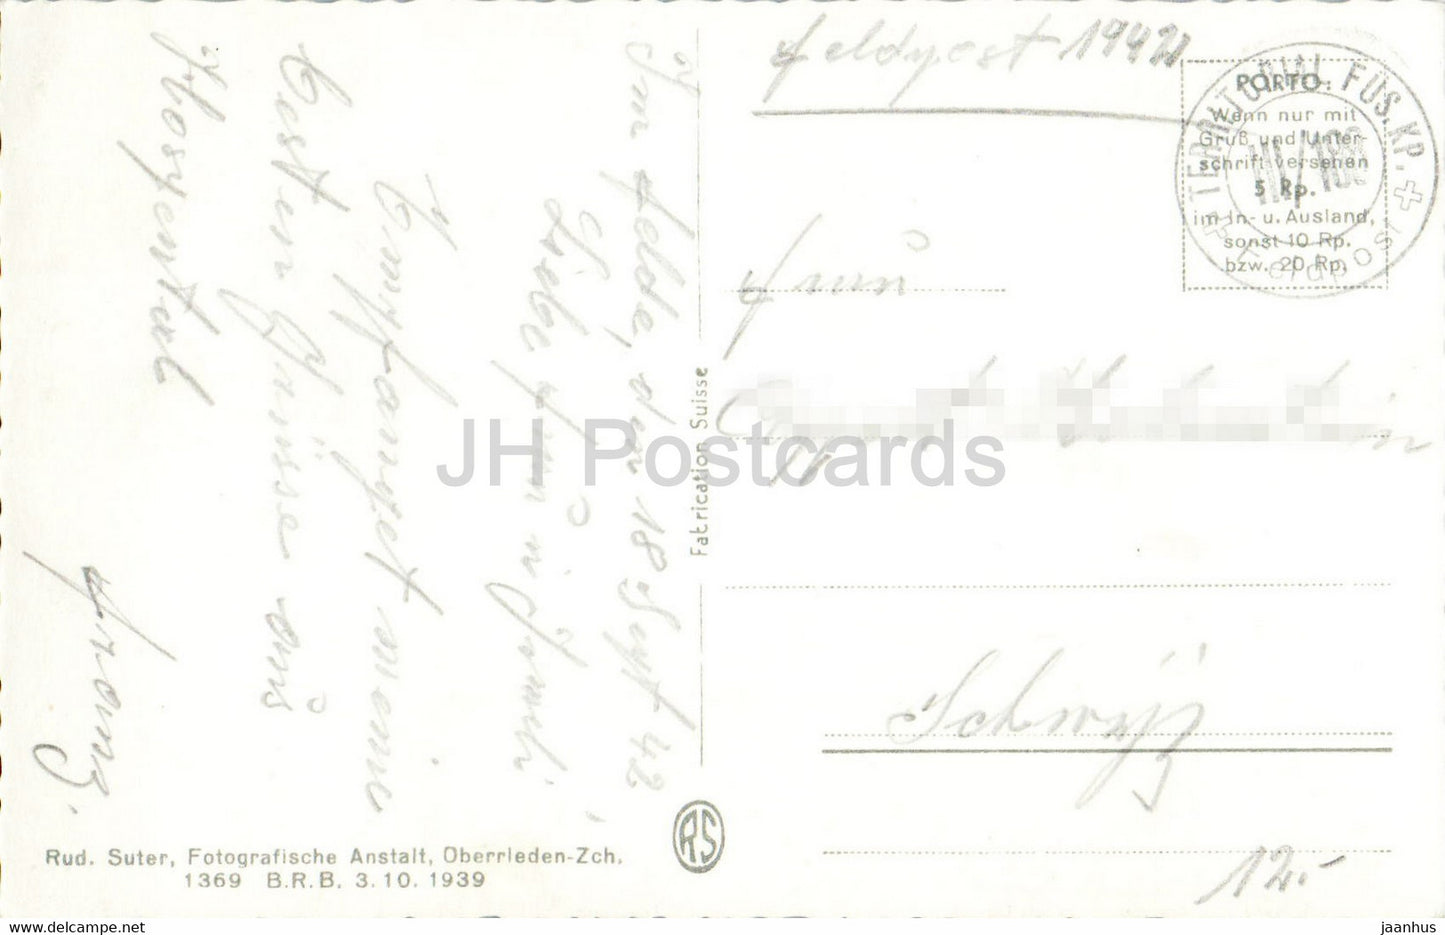 Andermatt gegen die Furka - 901 - 1942 - alte Postkarte - Schweiz - gebraucht